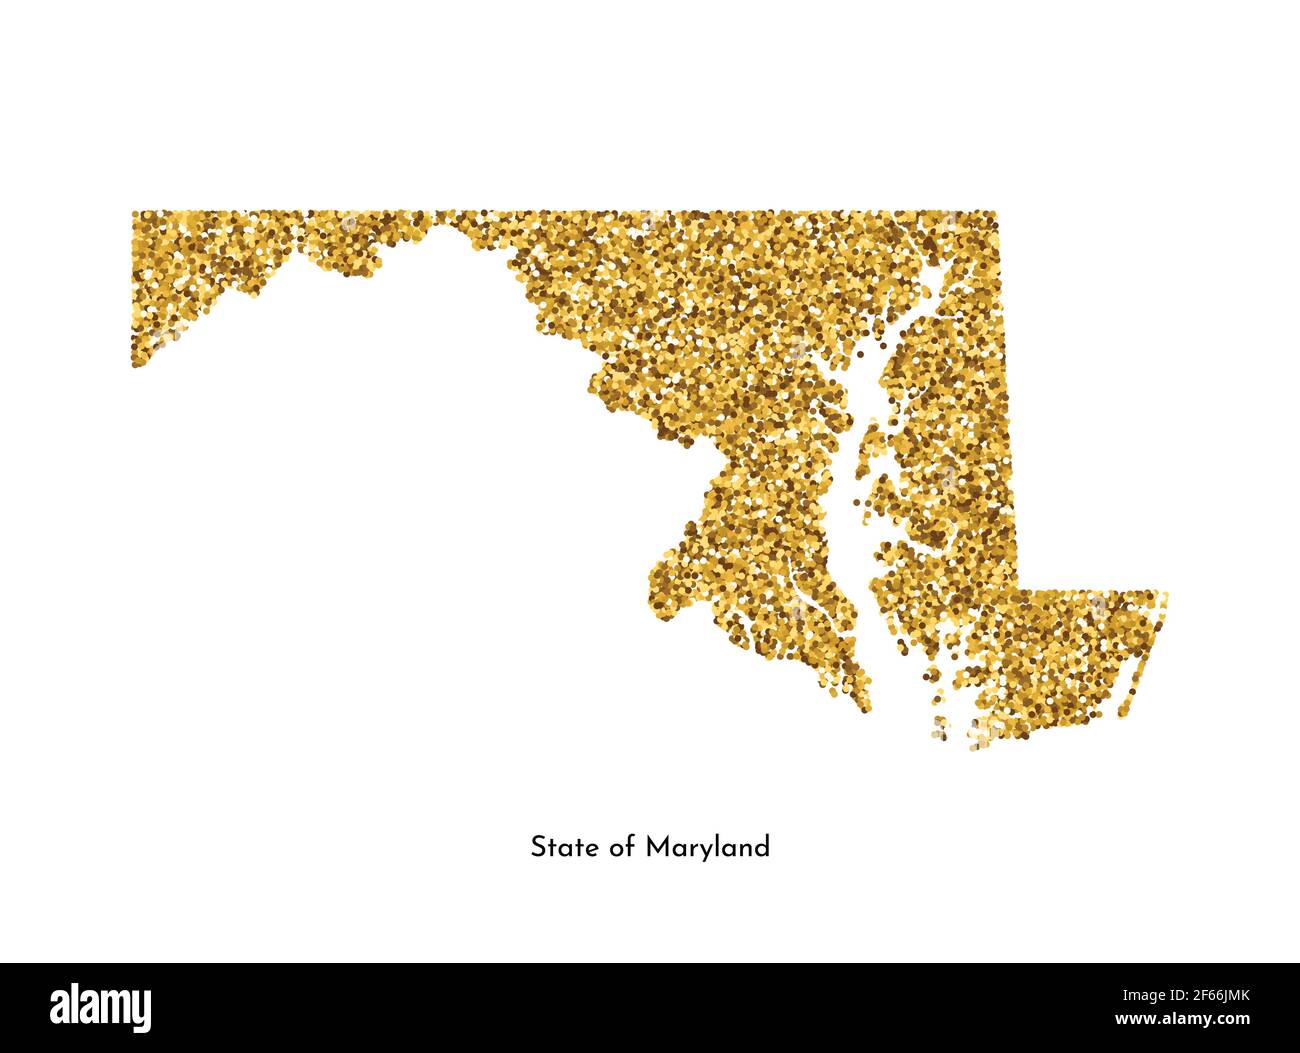 Illustrazione vettoriale isolata con mappa semplificata dello Stato del Maryland (USA). Luccicante texture dorata con glitter. Modello di decorazione. Illustrazione Vettoriale